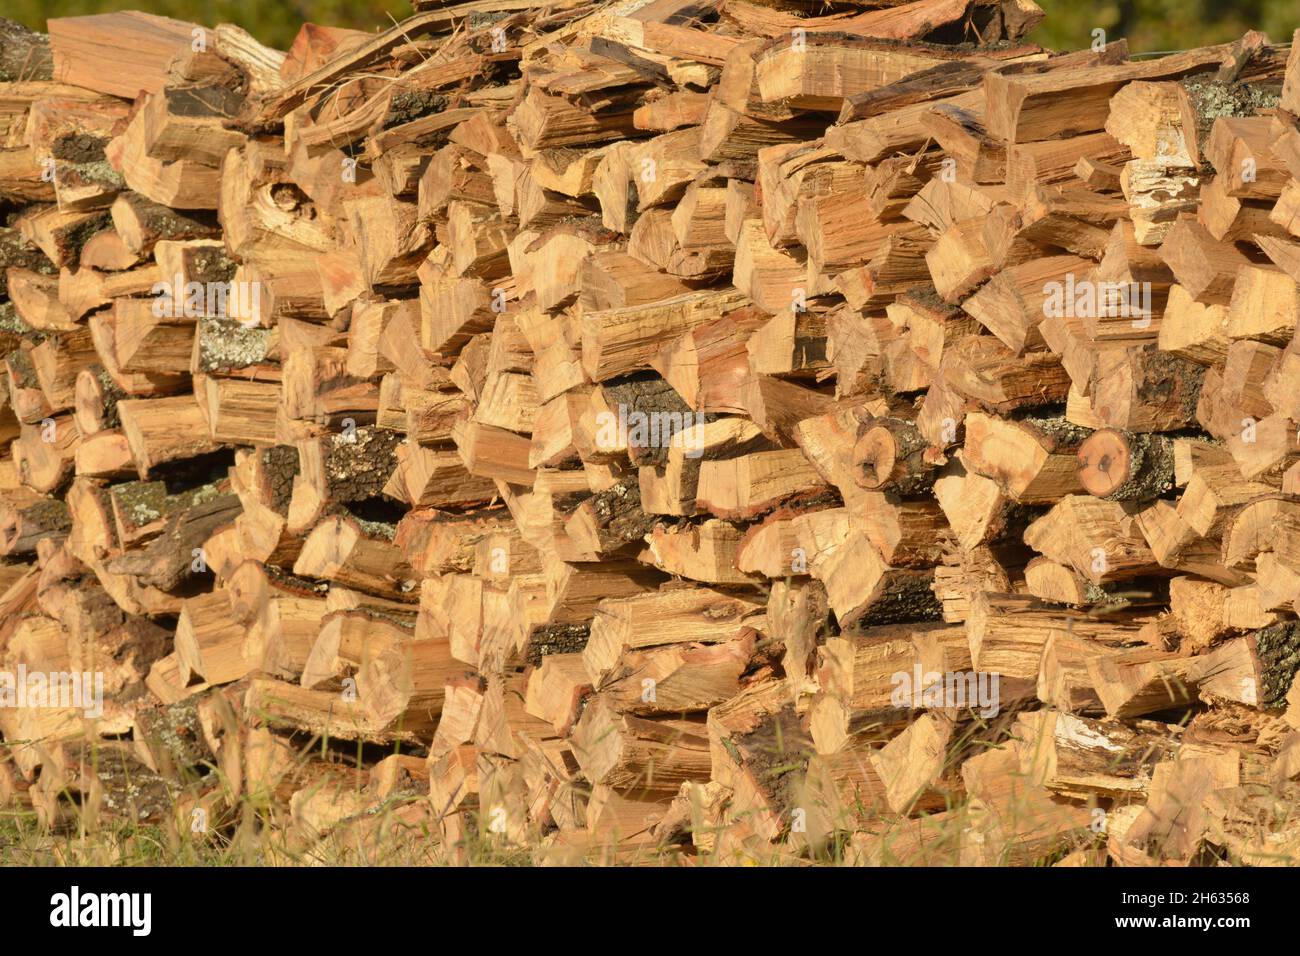 Leña de madera dura apilada en un montón Foto de stock